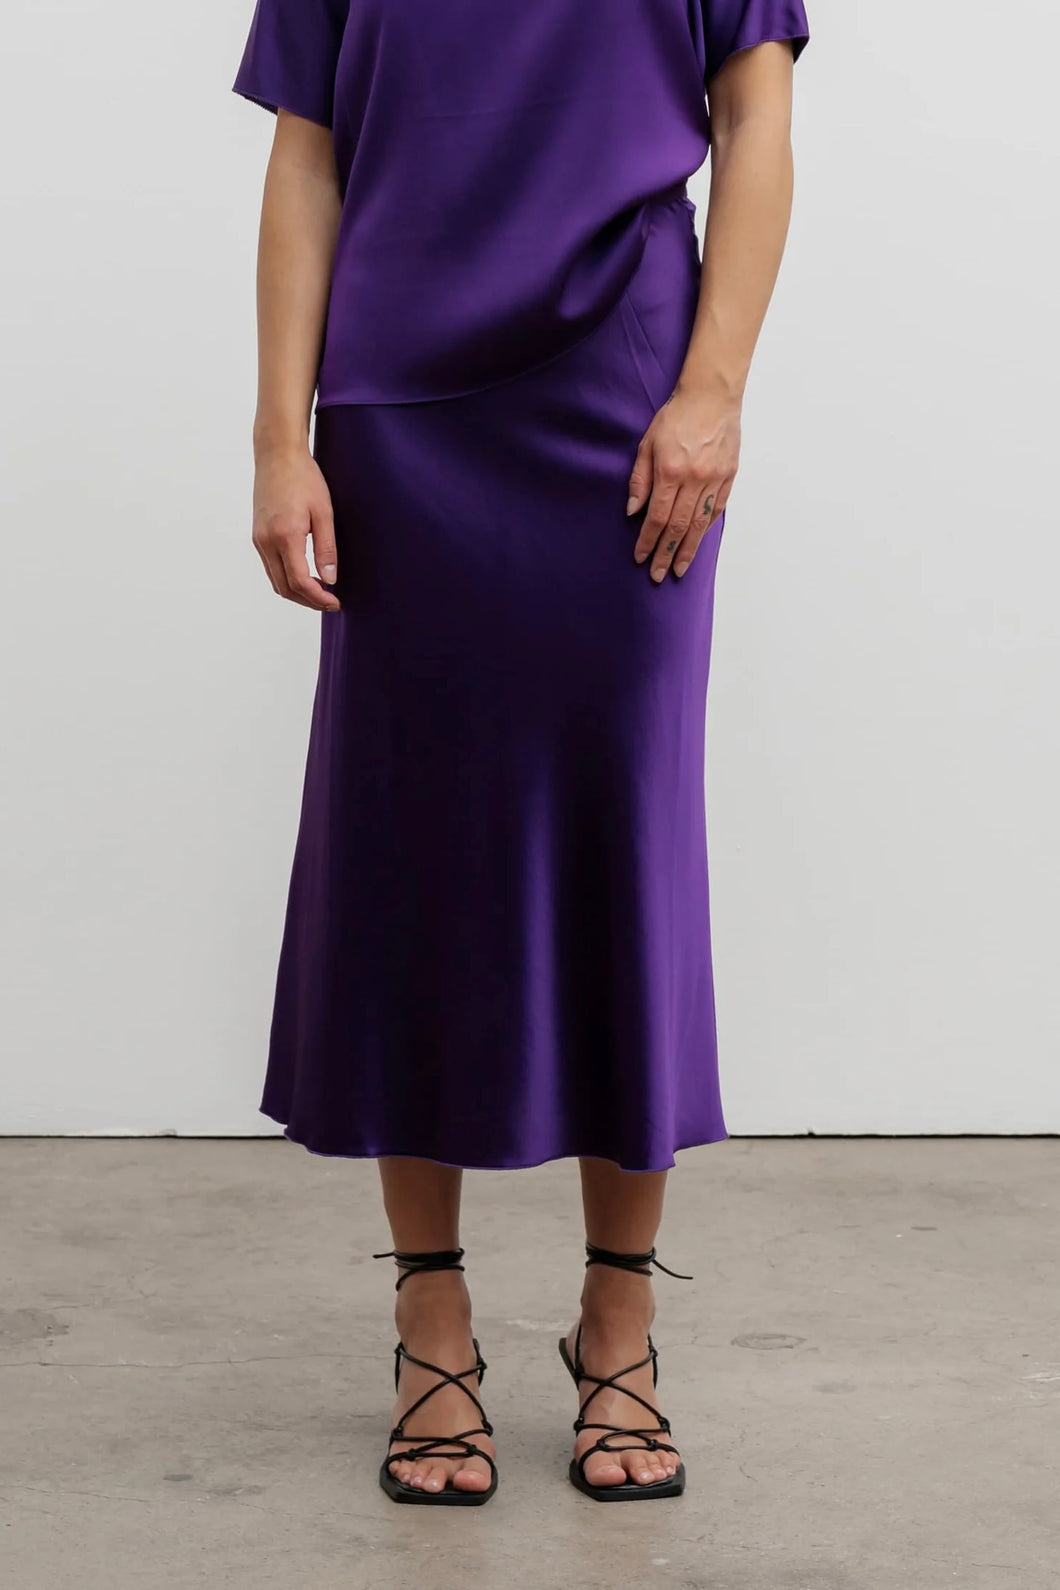 Ahlvar Gallery Hana Satin Skirt - more colors